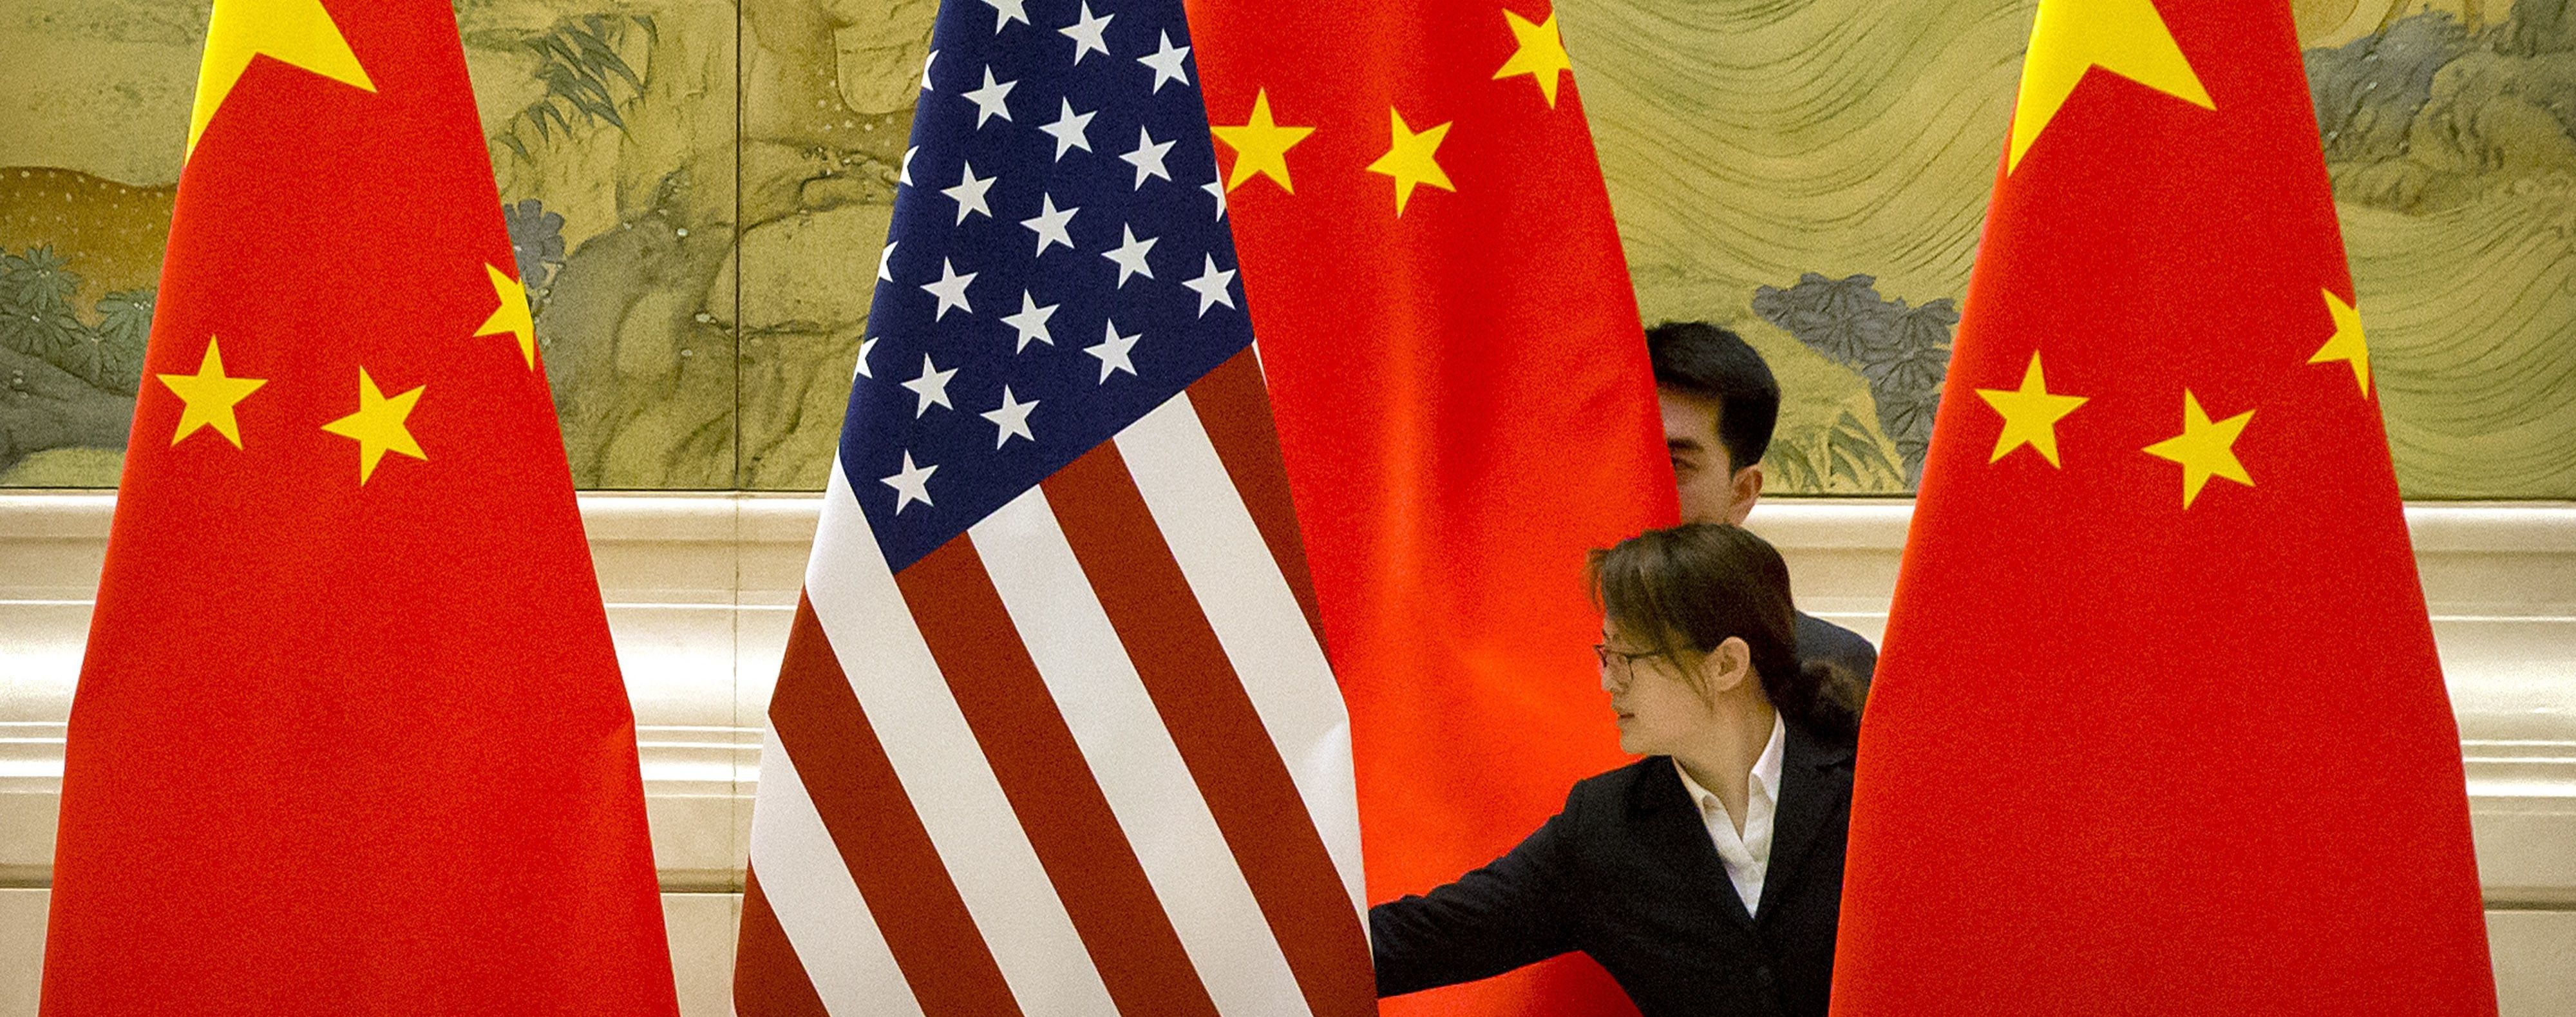 Китай пригрозил компаниям, которые поддержат запрет США продавать технологии - NYT